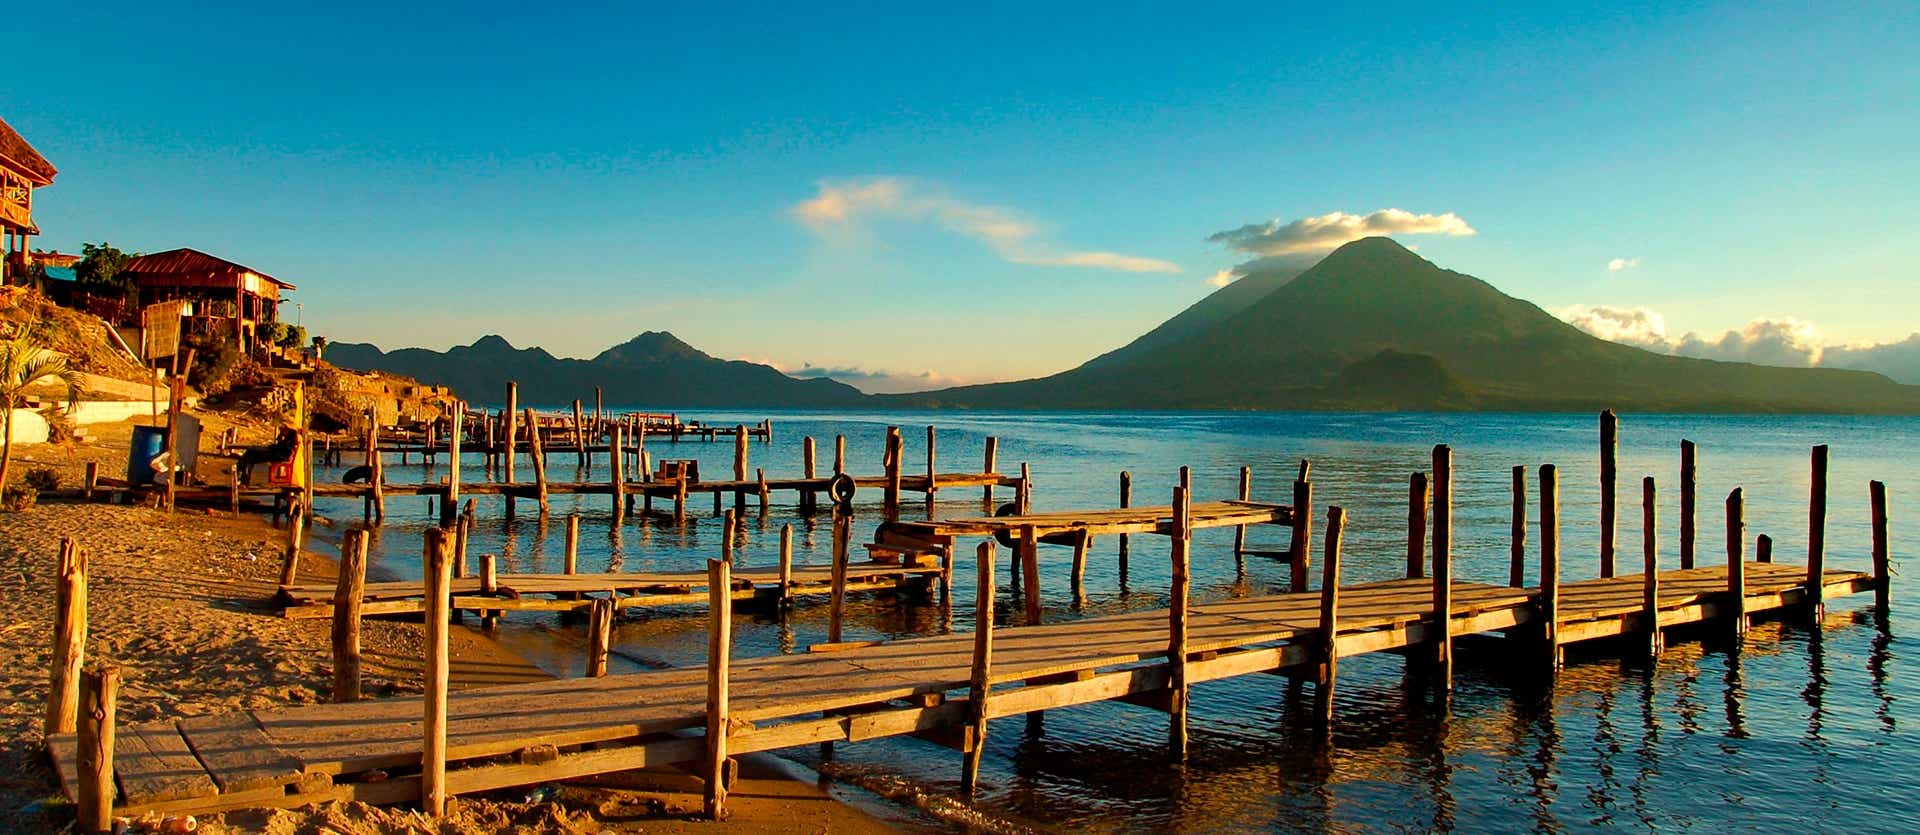 Lago Atitlán <span class="iconos separador"></span> Panajachel <span class="iconos separador"> Guatemala